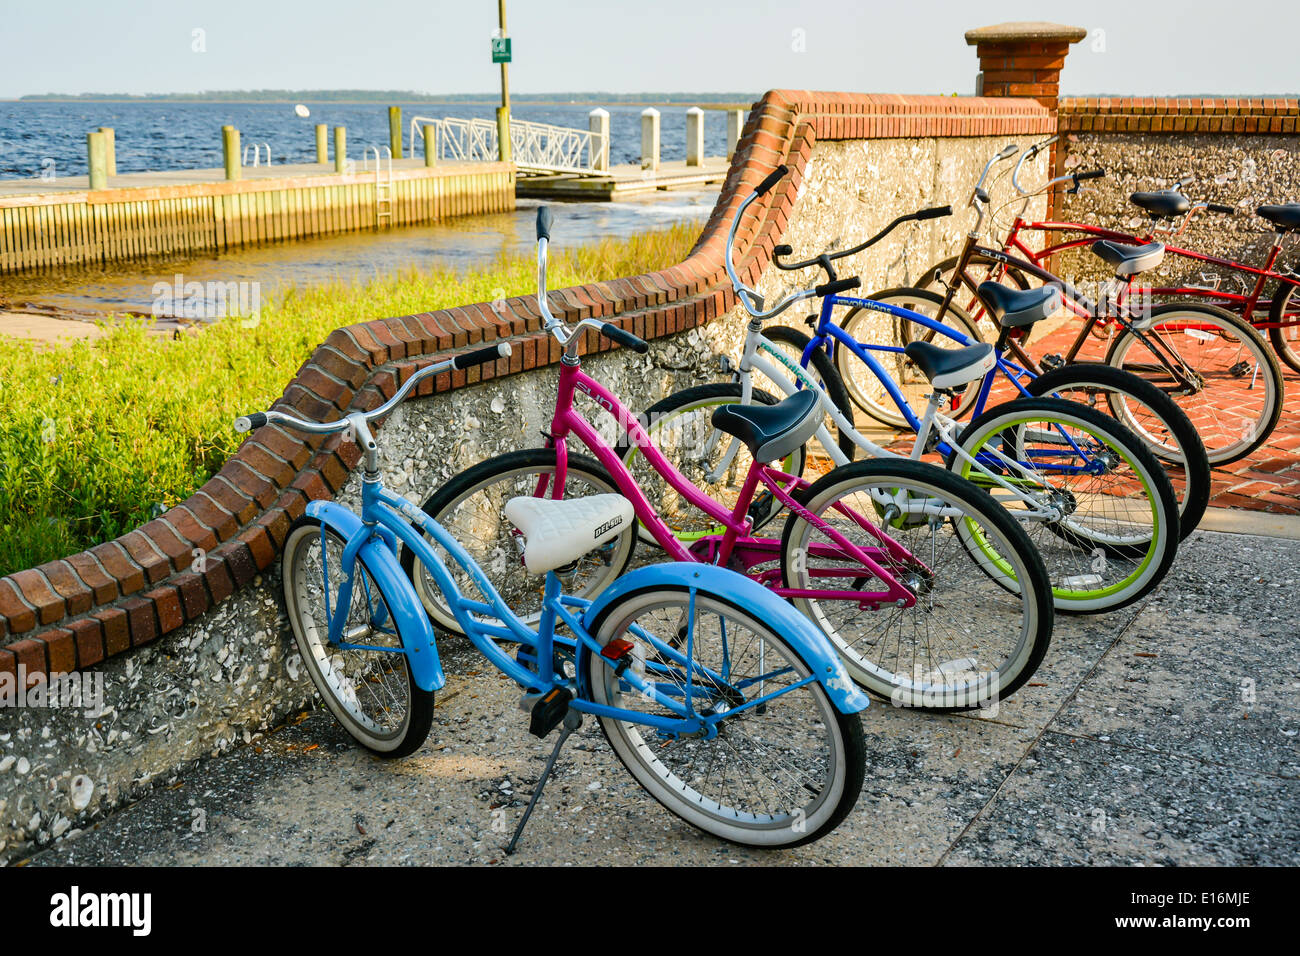 Colorata parcheggiato beach cruiser biciclette in appoggio contro una parete tabby sul lungomare porto di St. Mary's, GA, Stati Uniti d'America Foto Stock